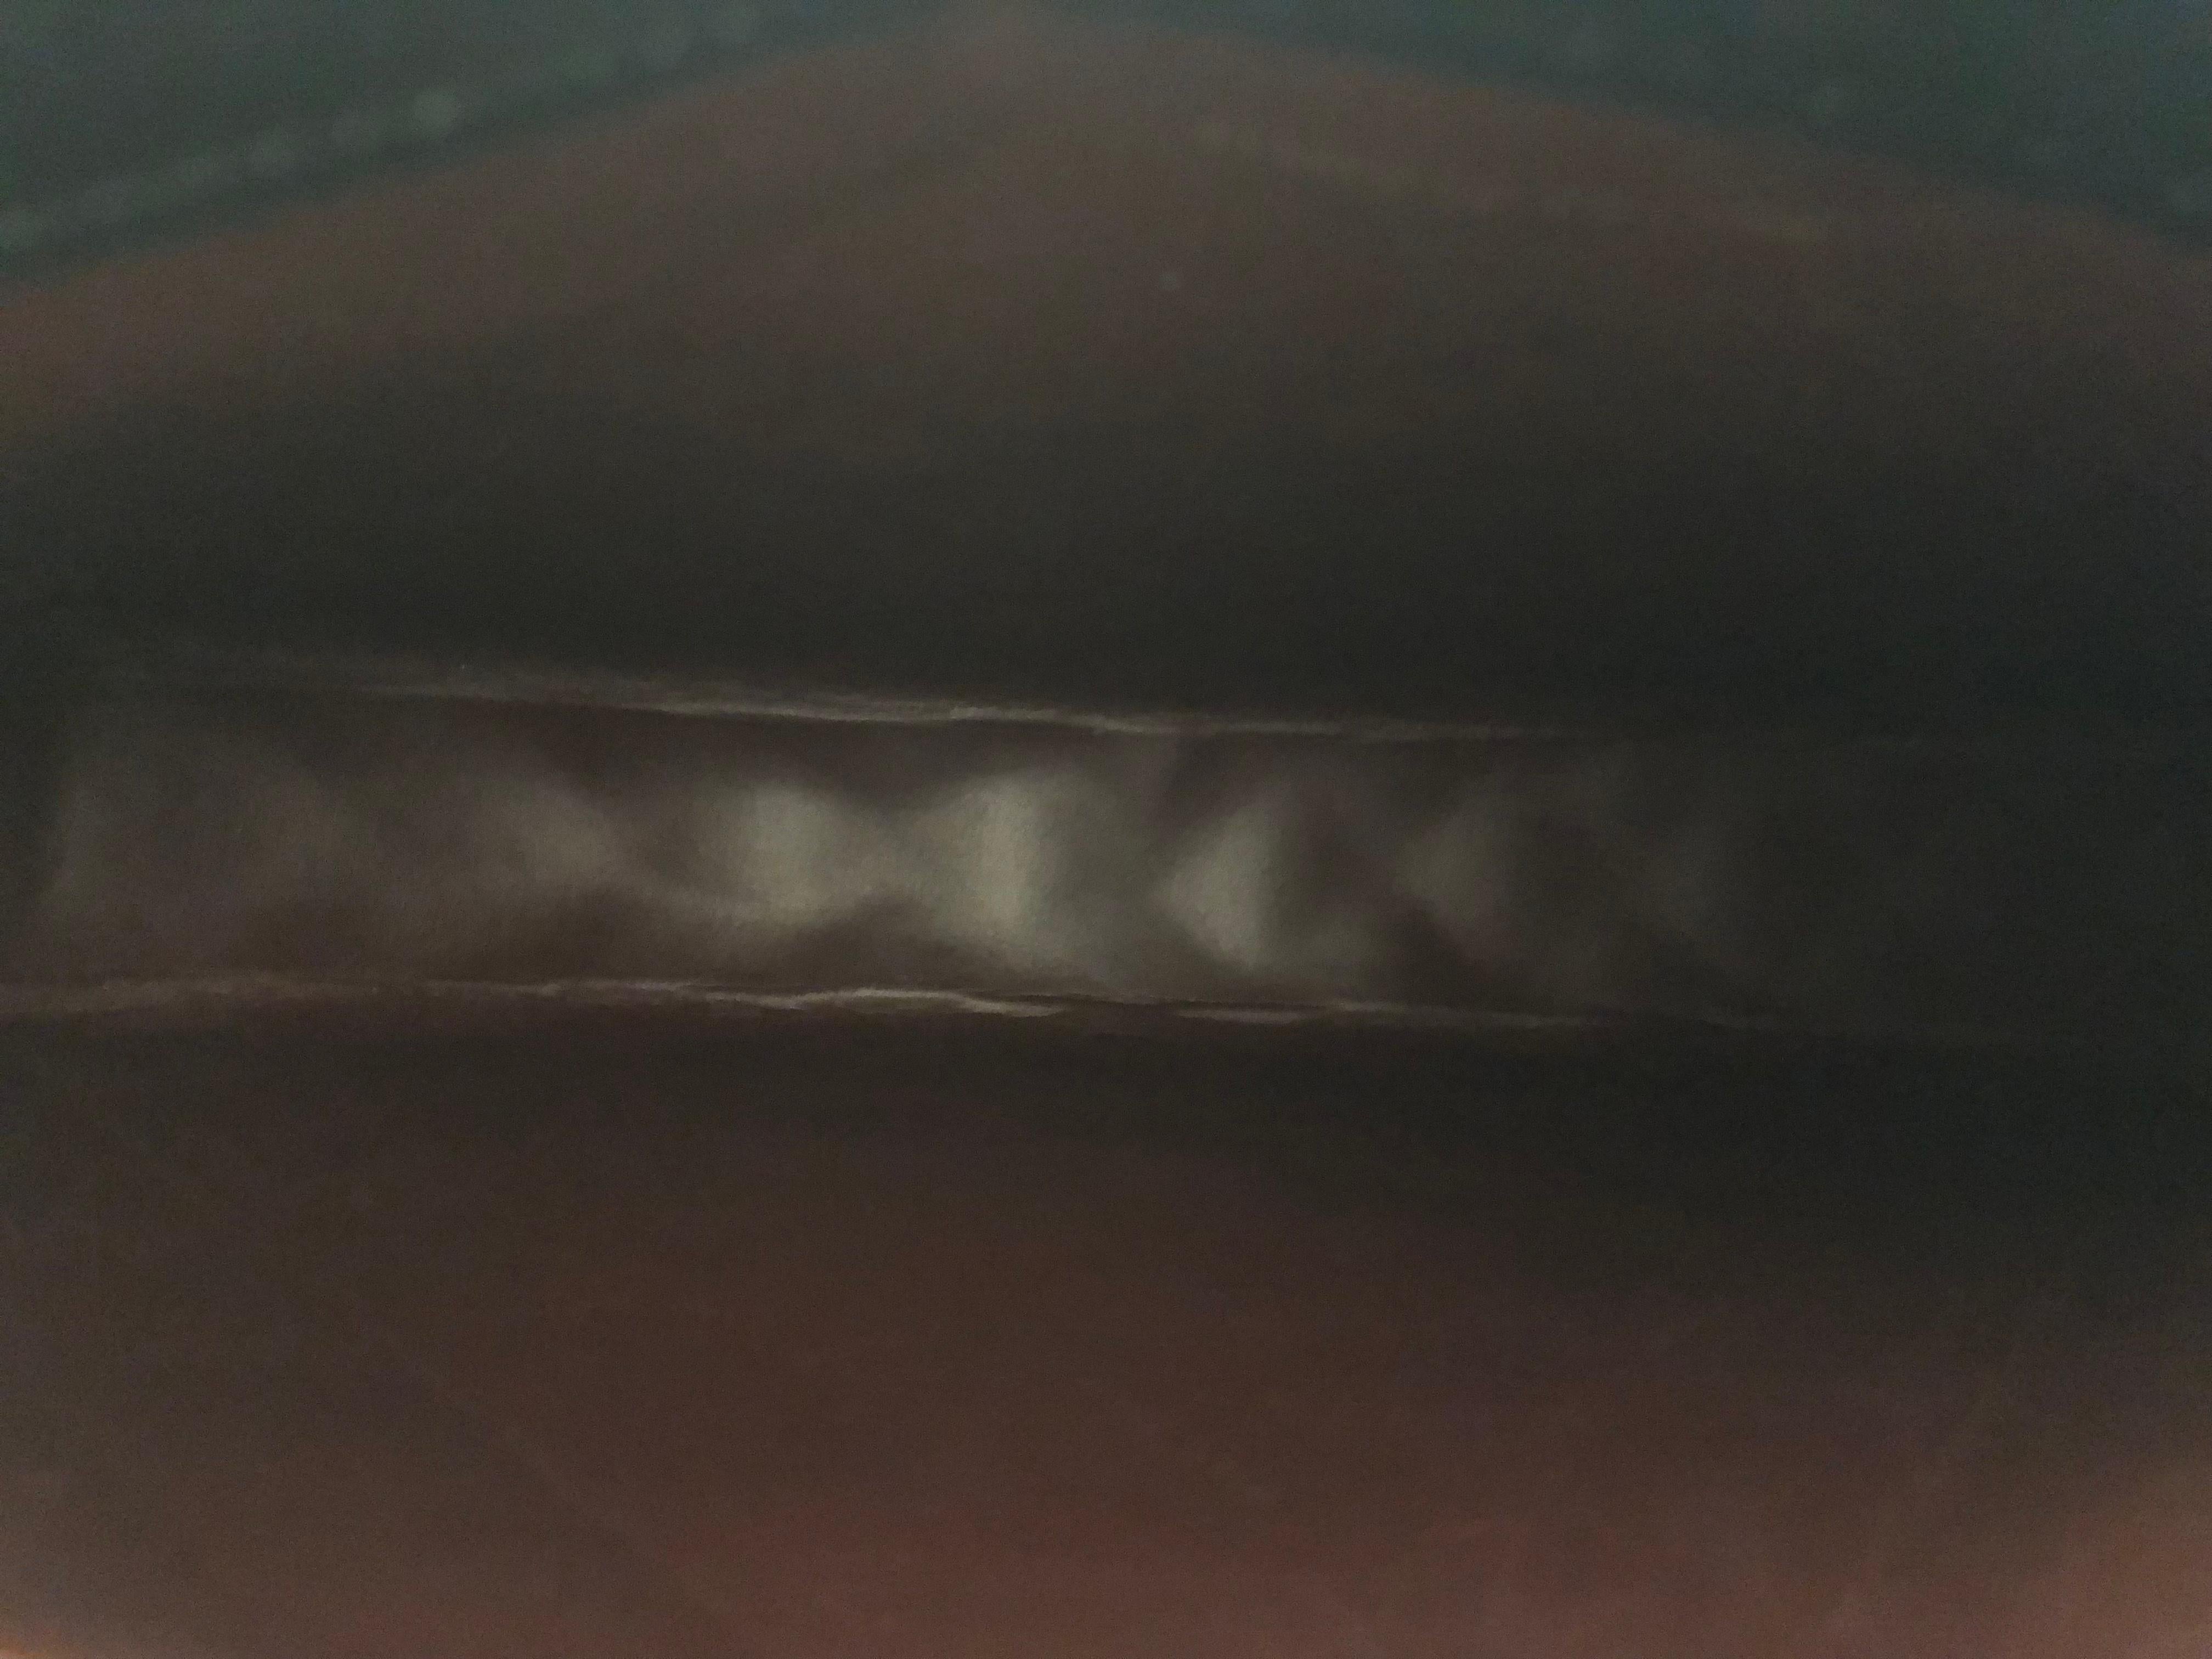 Vintage CHANEL Two-Toned Diamond Quilted Lambskin Leather Clutch Bag Large (pochette en cuir d'agneau matelassé bicolore) 1